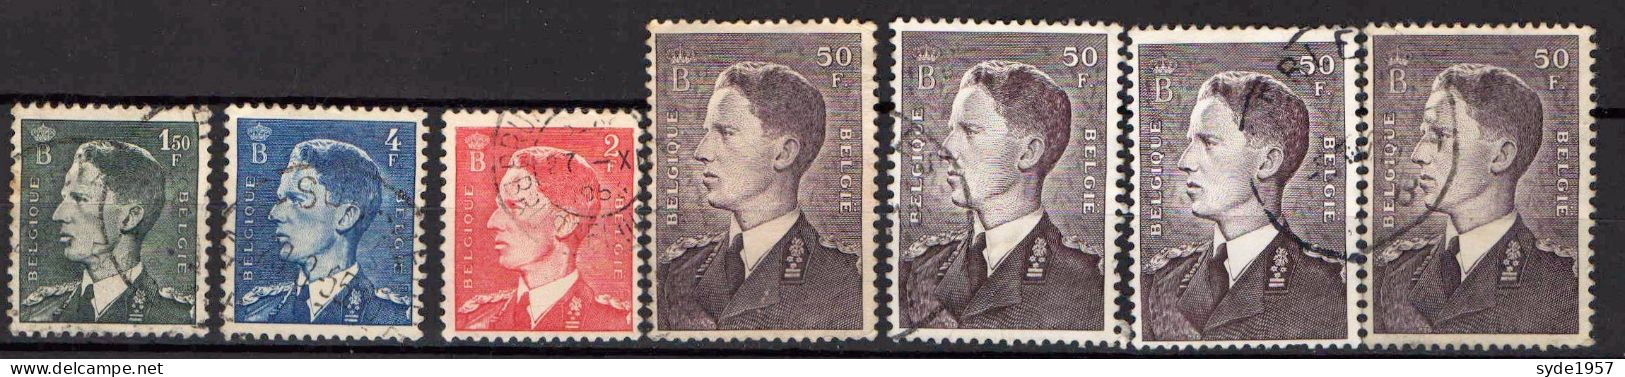 Belgique 1952 Baudouin COB 879 (x2), 879a (x2), 909, 910, 911 - Oblitérés - Used Stamps